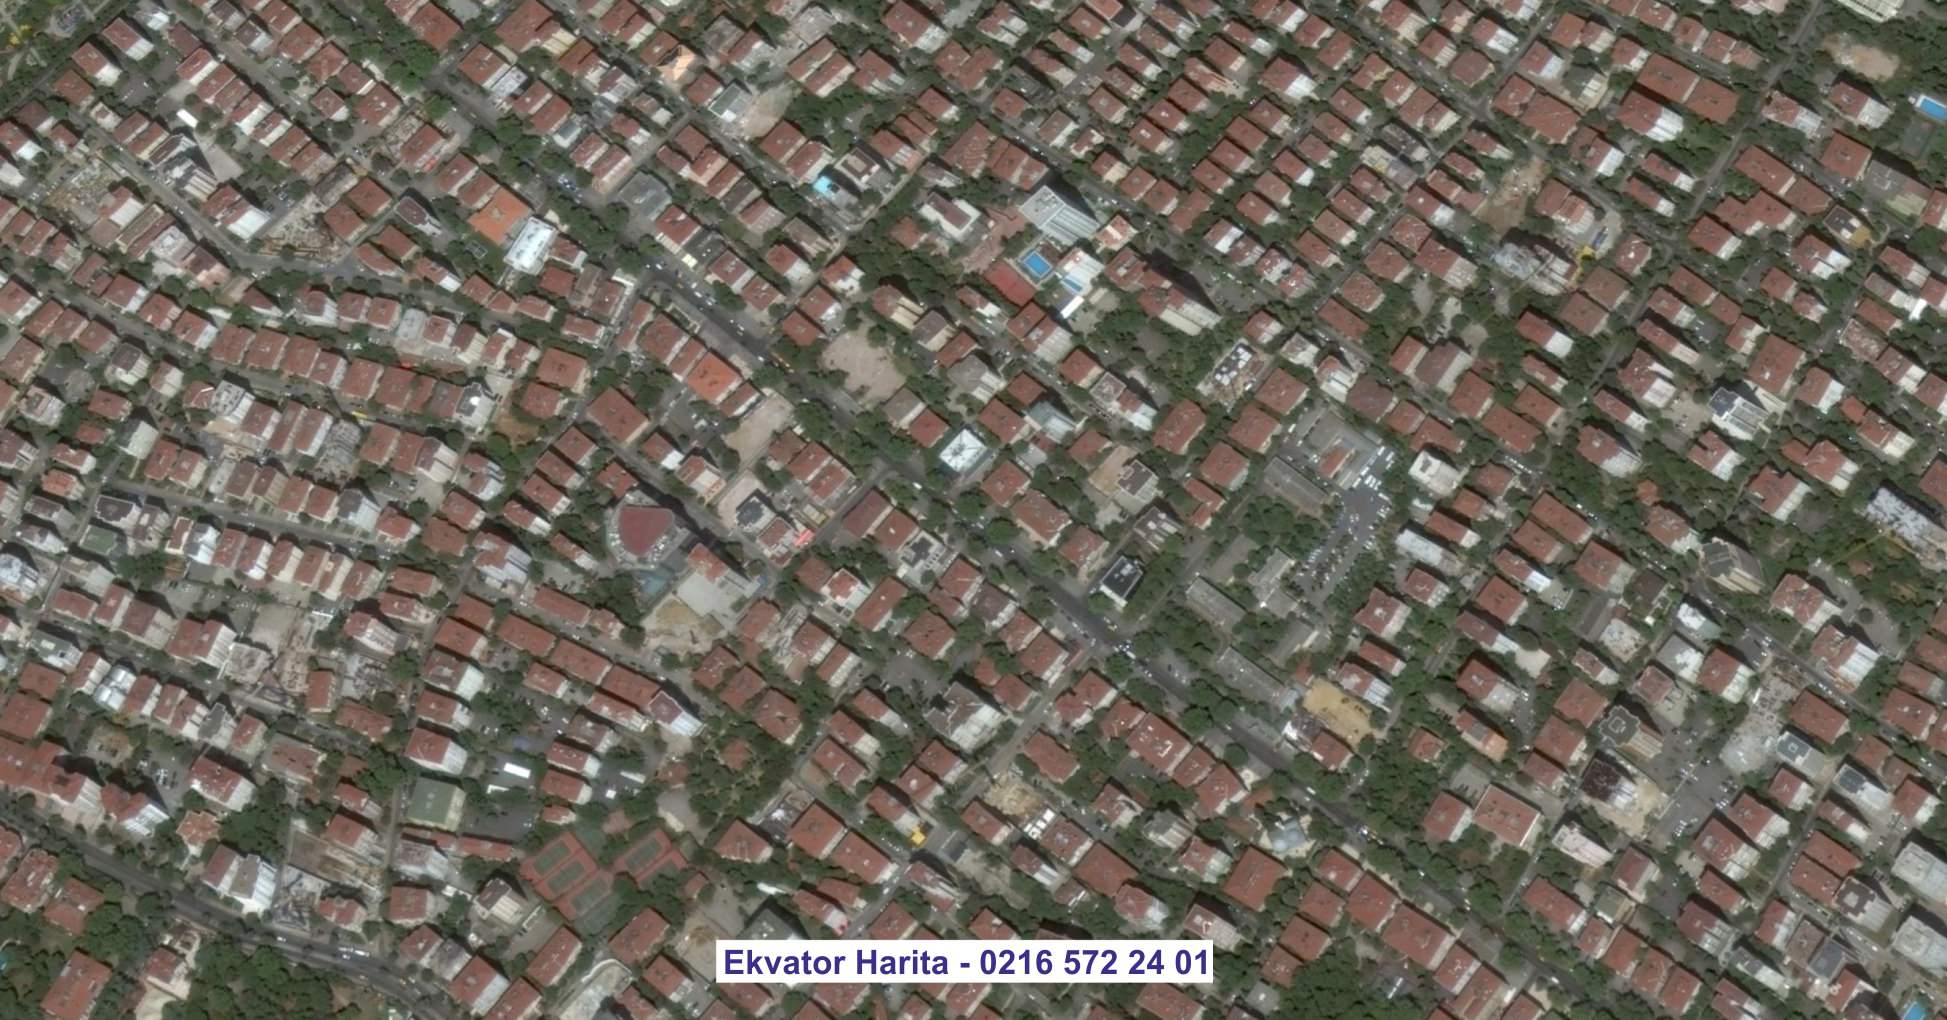 Trabzon Uydu Görüntüsü Örnek Fotoğrafı